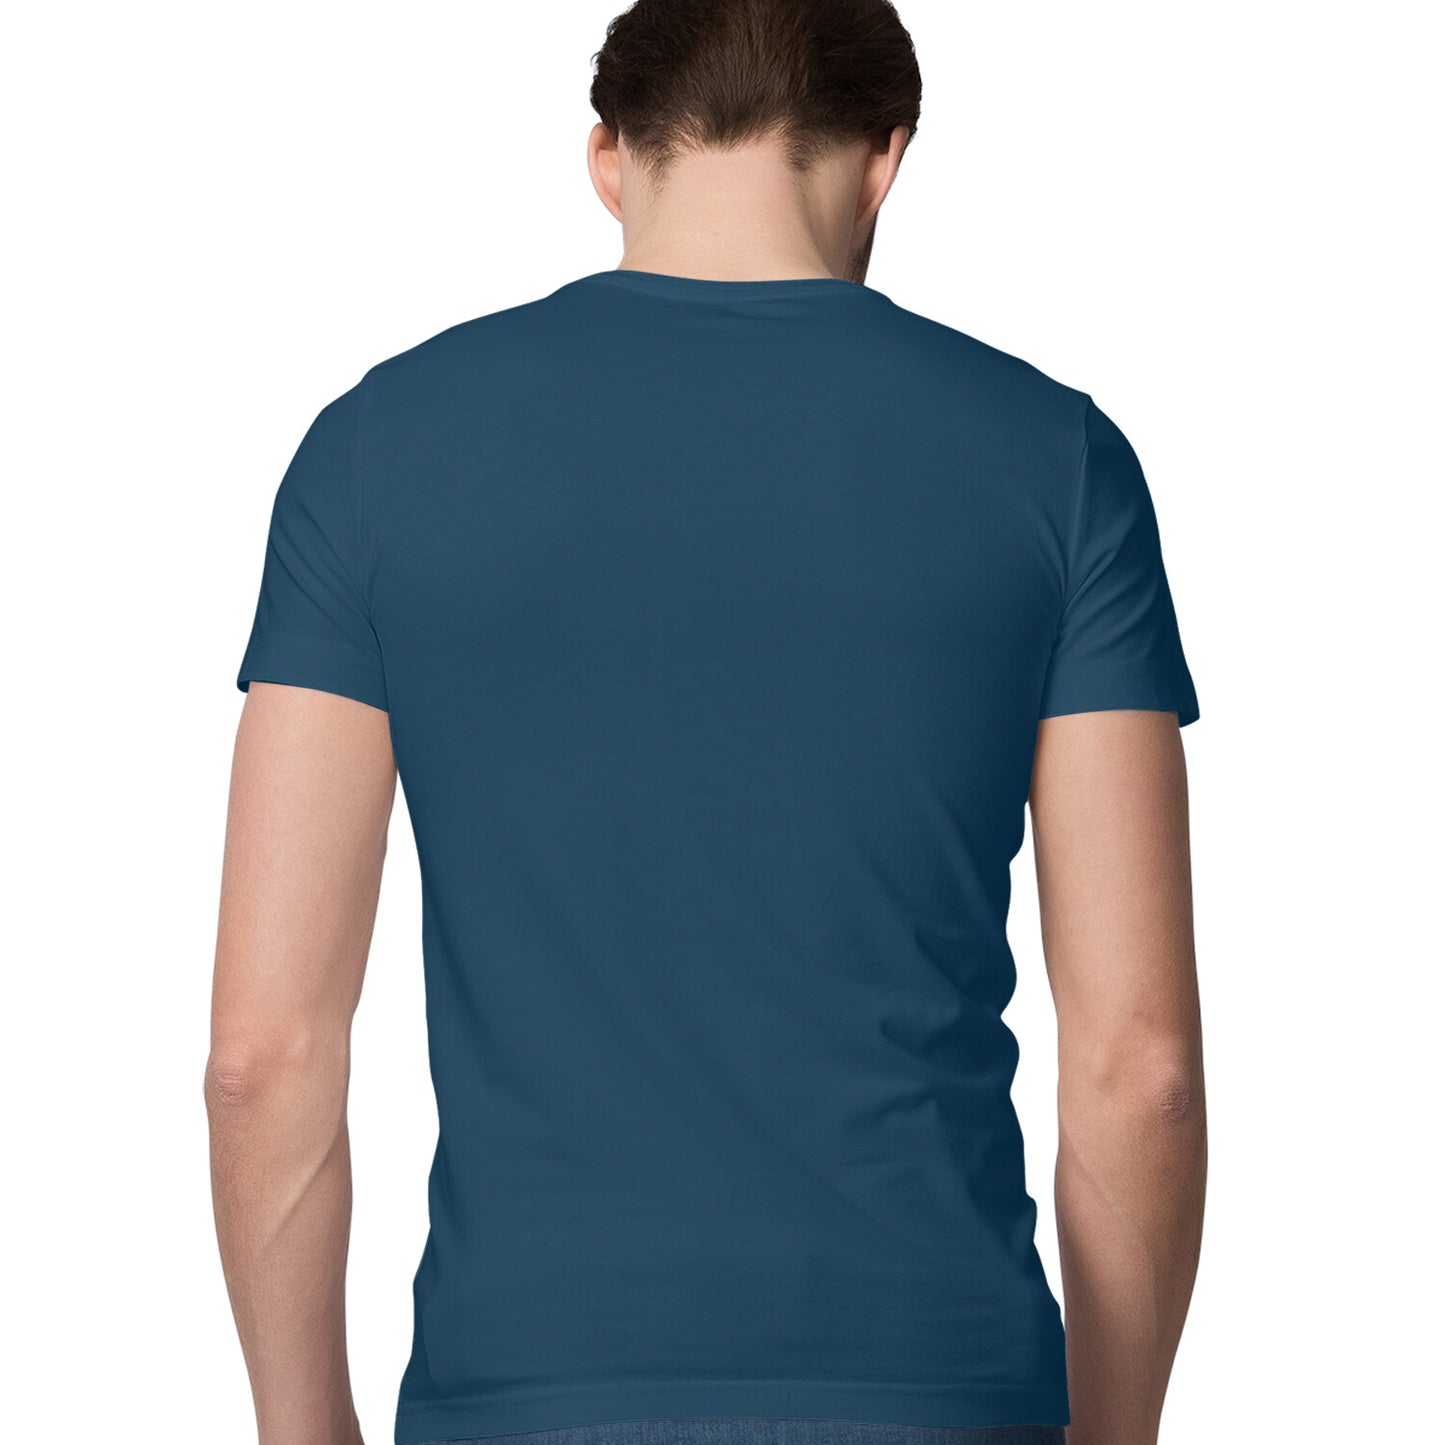 Navy Blue - Half Sleeve Round Neck T-Shirt